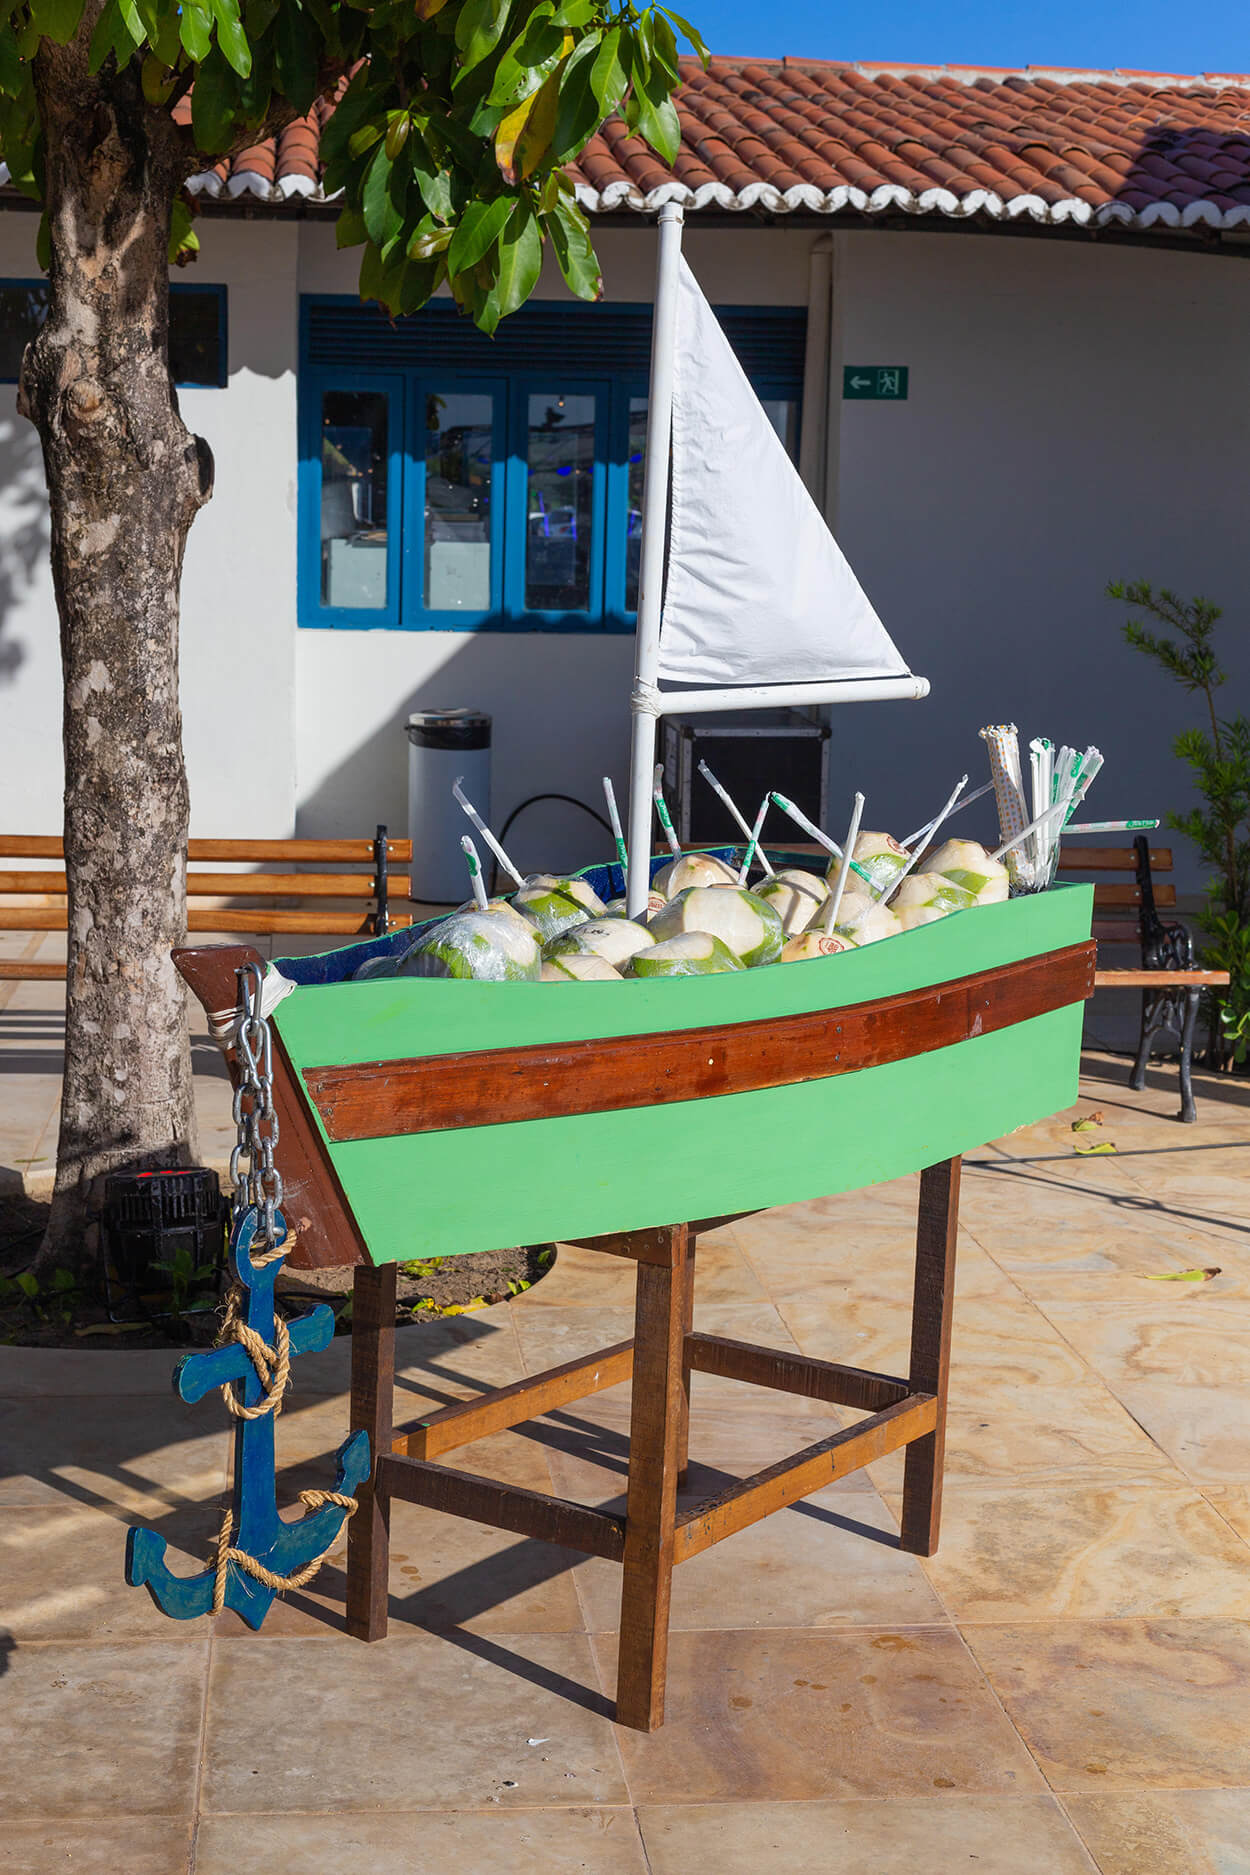 barco de madeira com cocos verdes